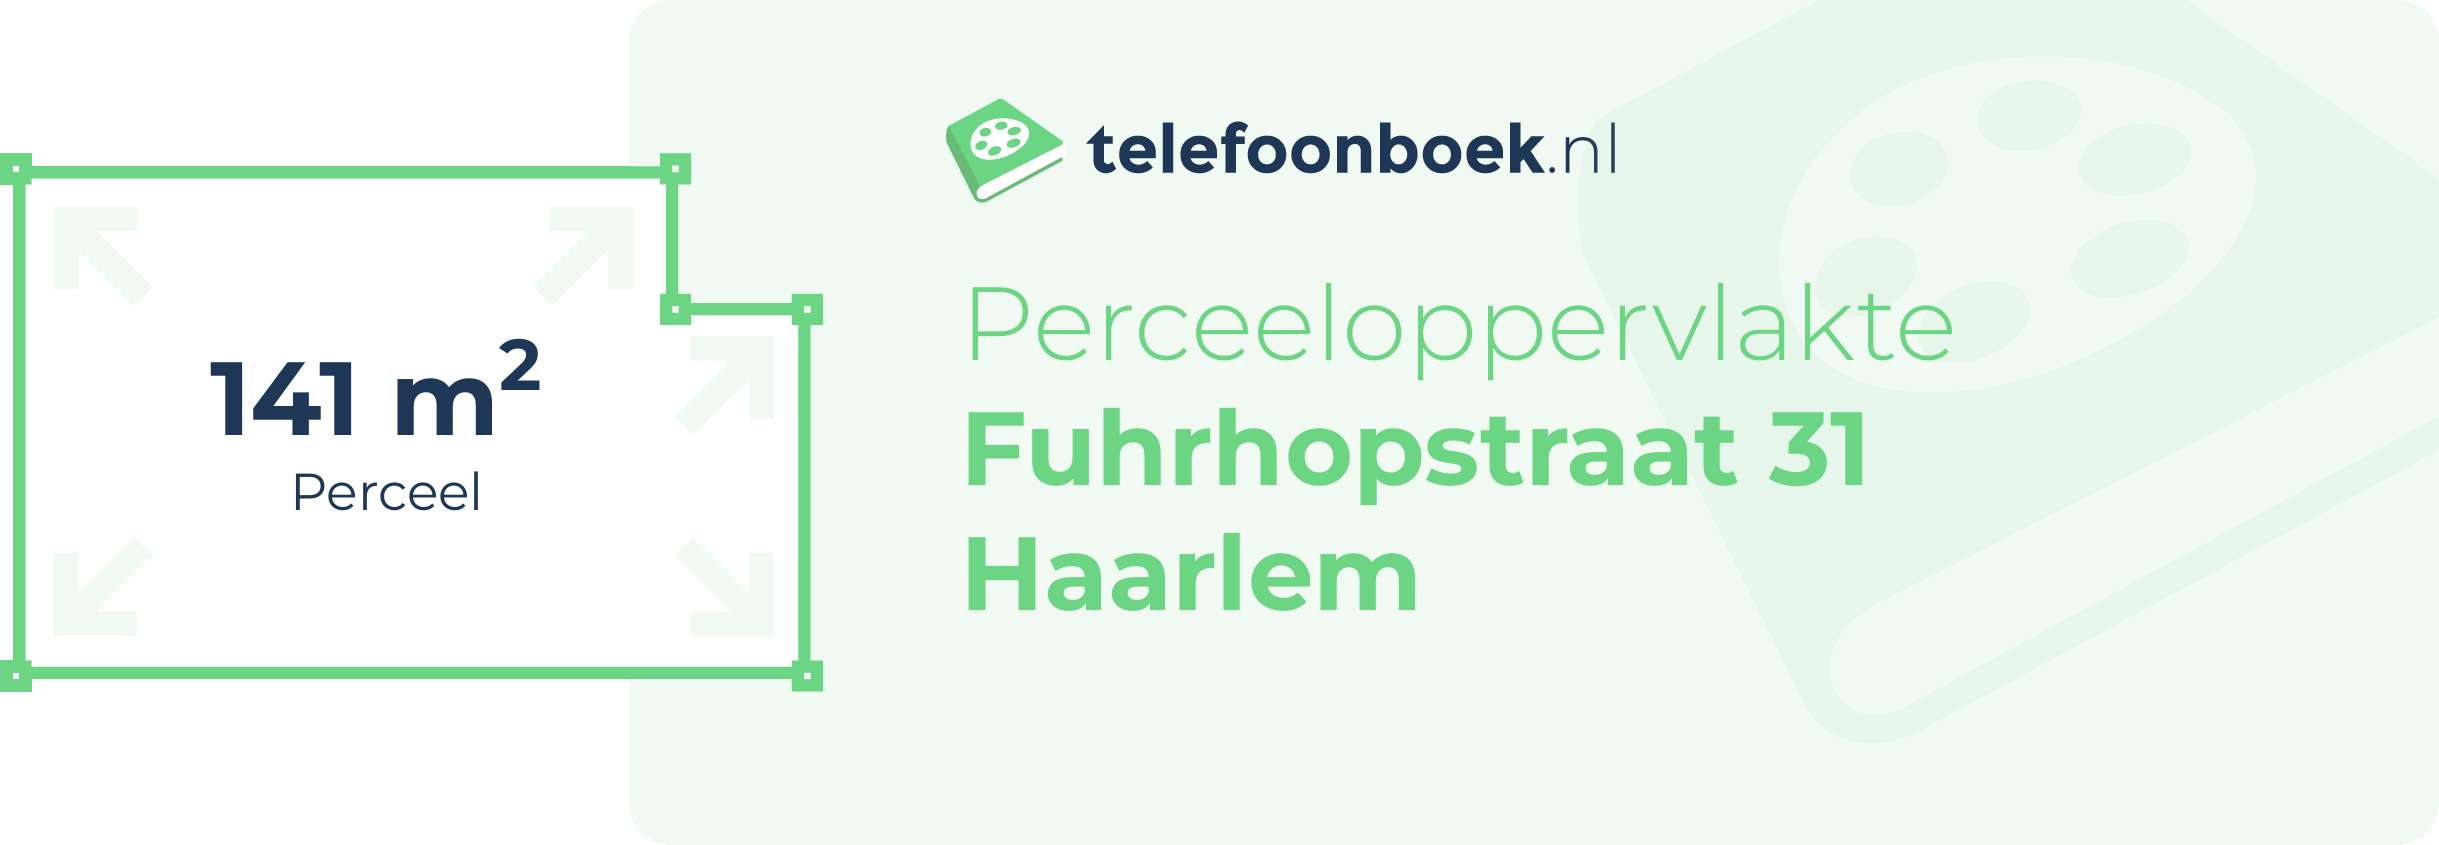 Perceeloppervlakte Fuhrhopstraat 31 Haarlem